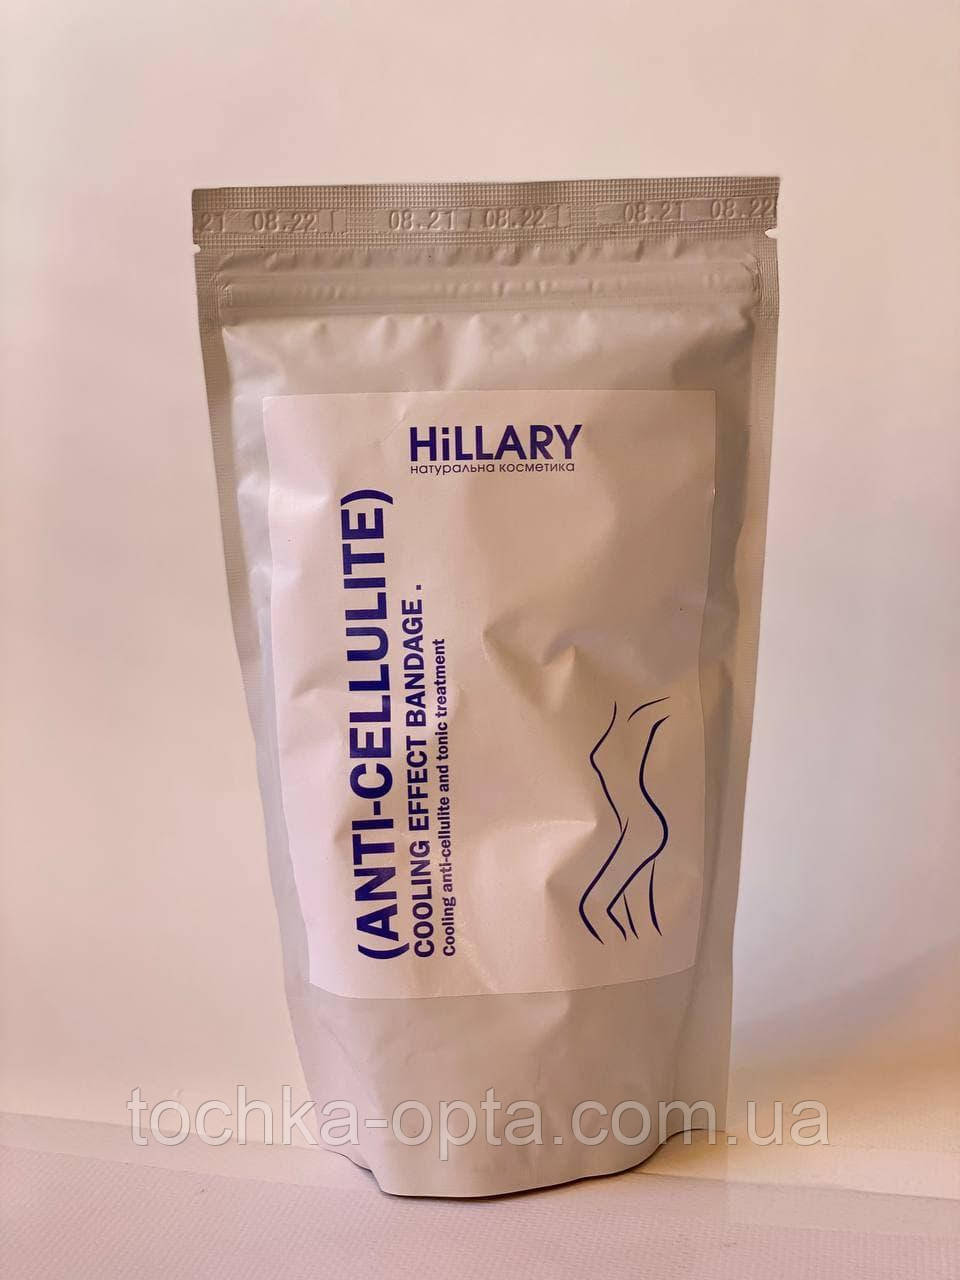 Антицелюлітні обгортання з охолоджувальним ефектом Hillary Anti-cellulite Bandage Cooling Effect